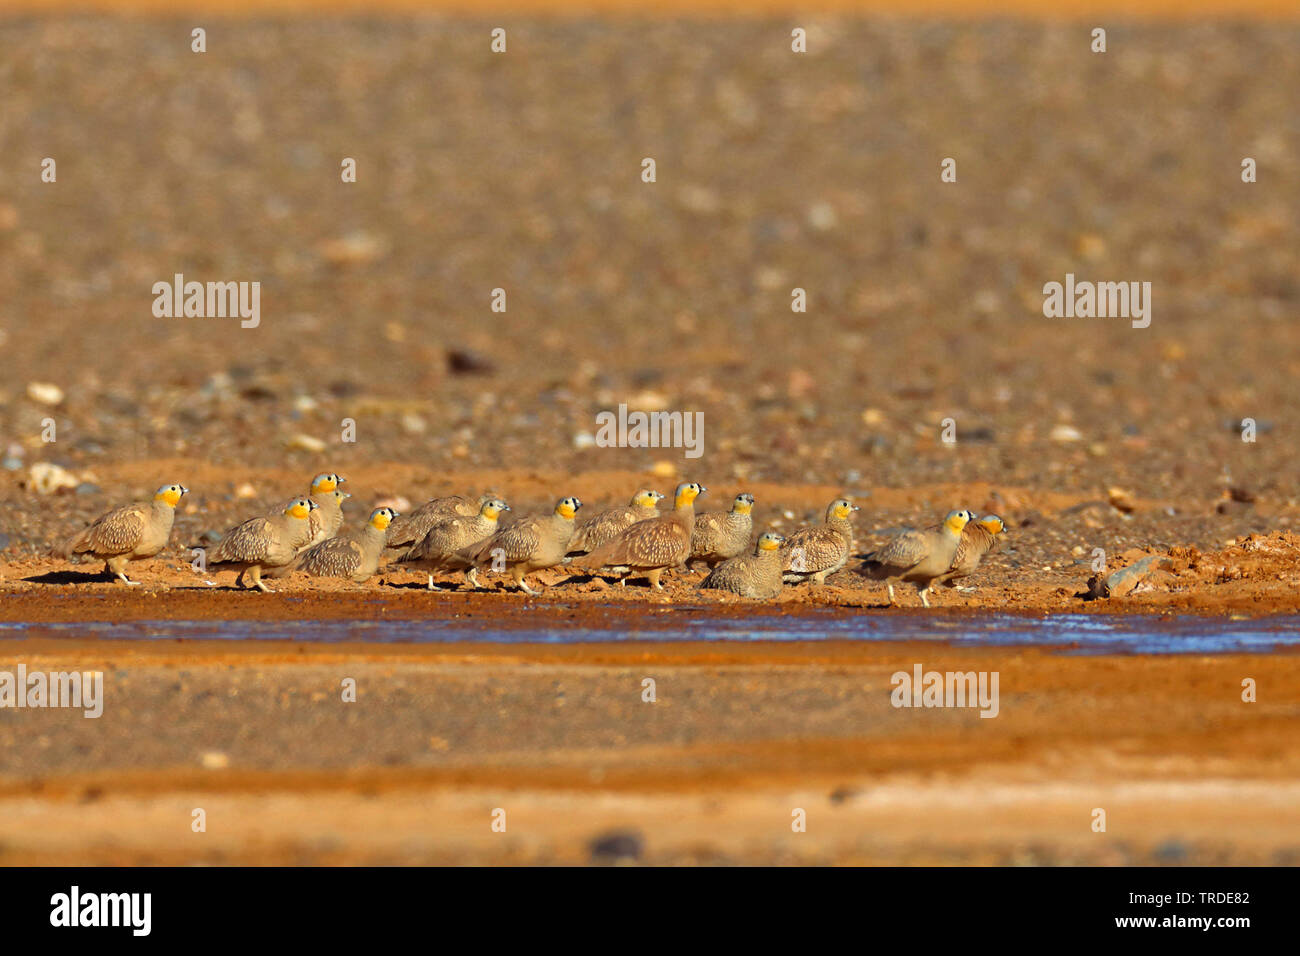 Incoronato sandgrouse (Pterocles coronatus), truppa presso un posto d'acqua nel deserto, Marocco Foto Stock